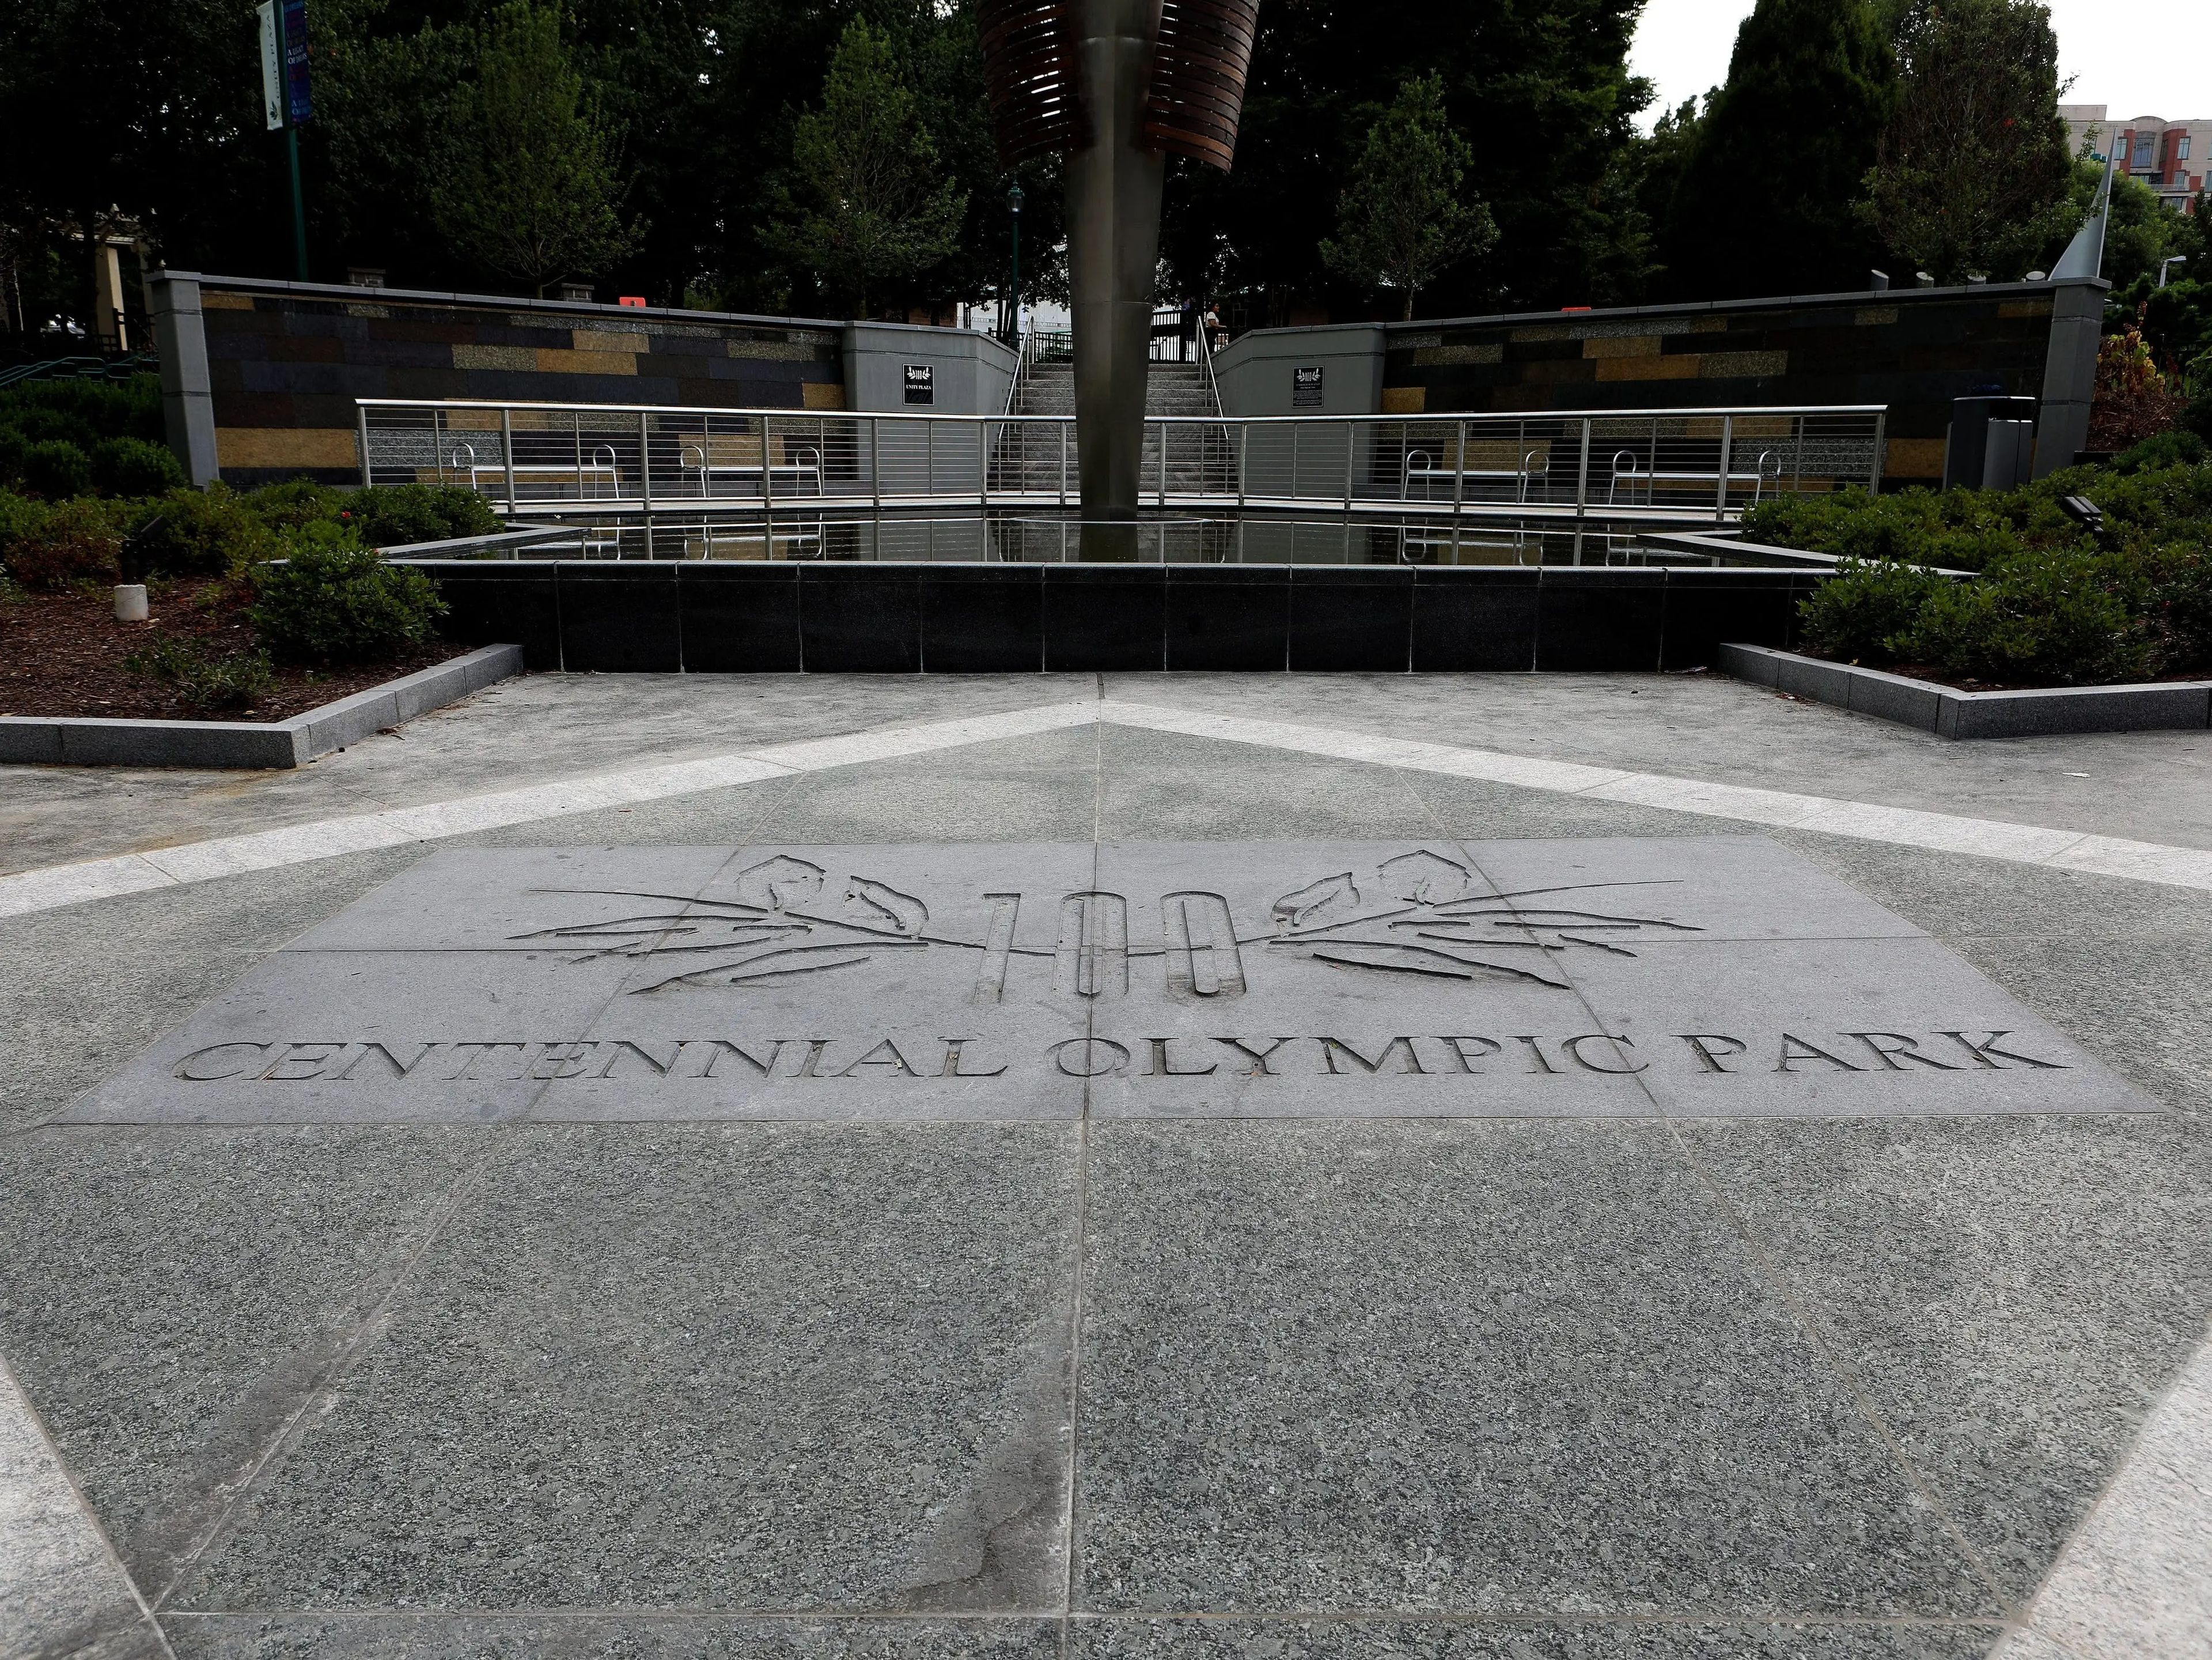 Señalización del Centennial Olympic Park en Atlanta, Georgia, el 28 de julio de 2019.